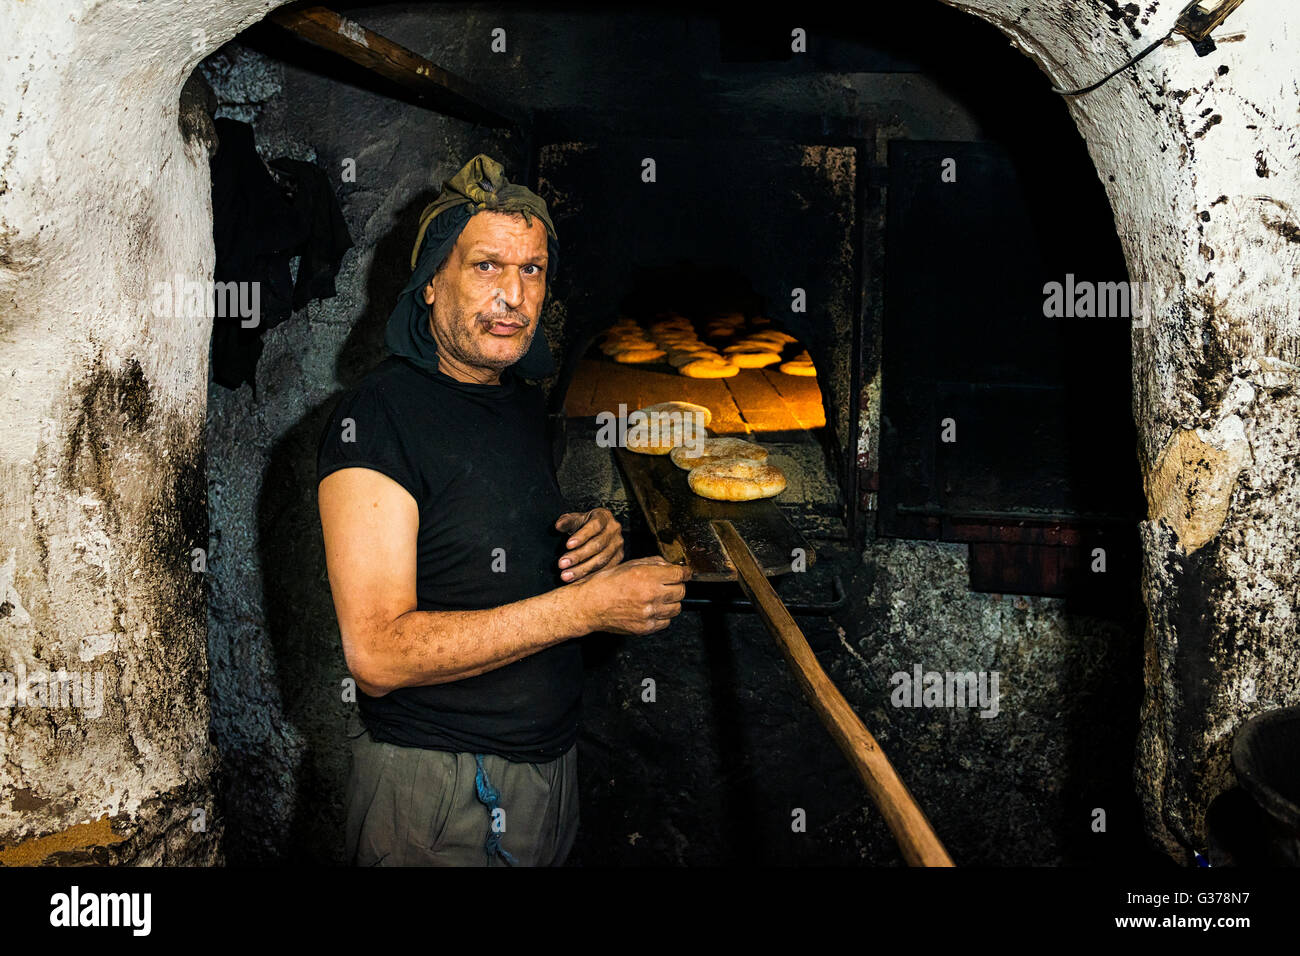 Fes, Maroc - 11 Avril 2016 : Portrait of a baker debout devant un four traditionnel la cuisson du pain à Fès, au Maroc. Banque D'Images